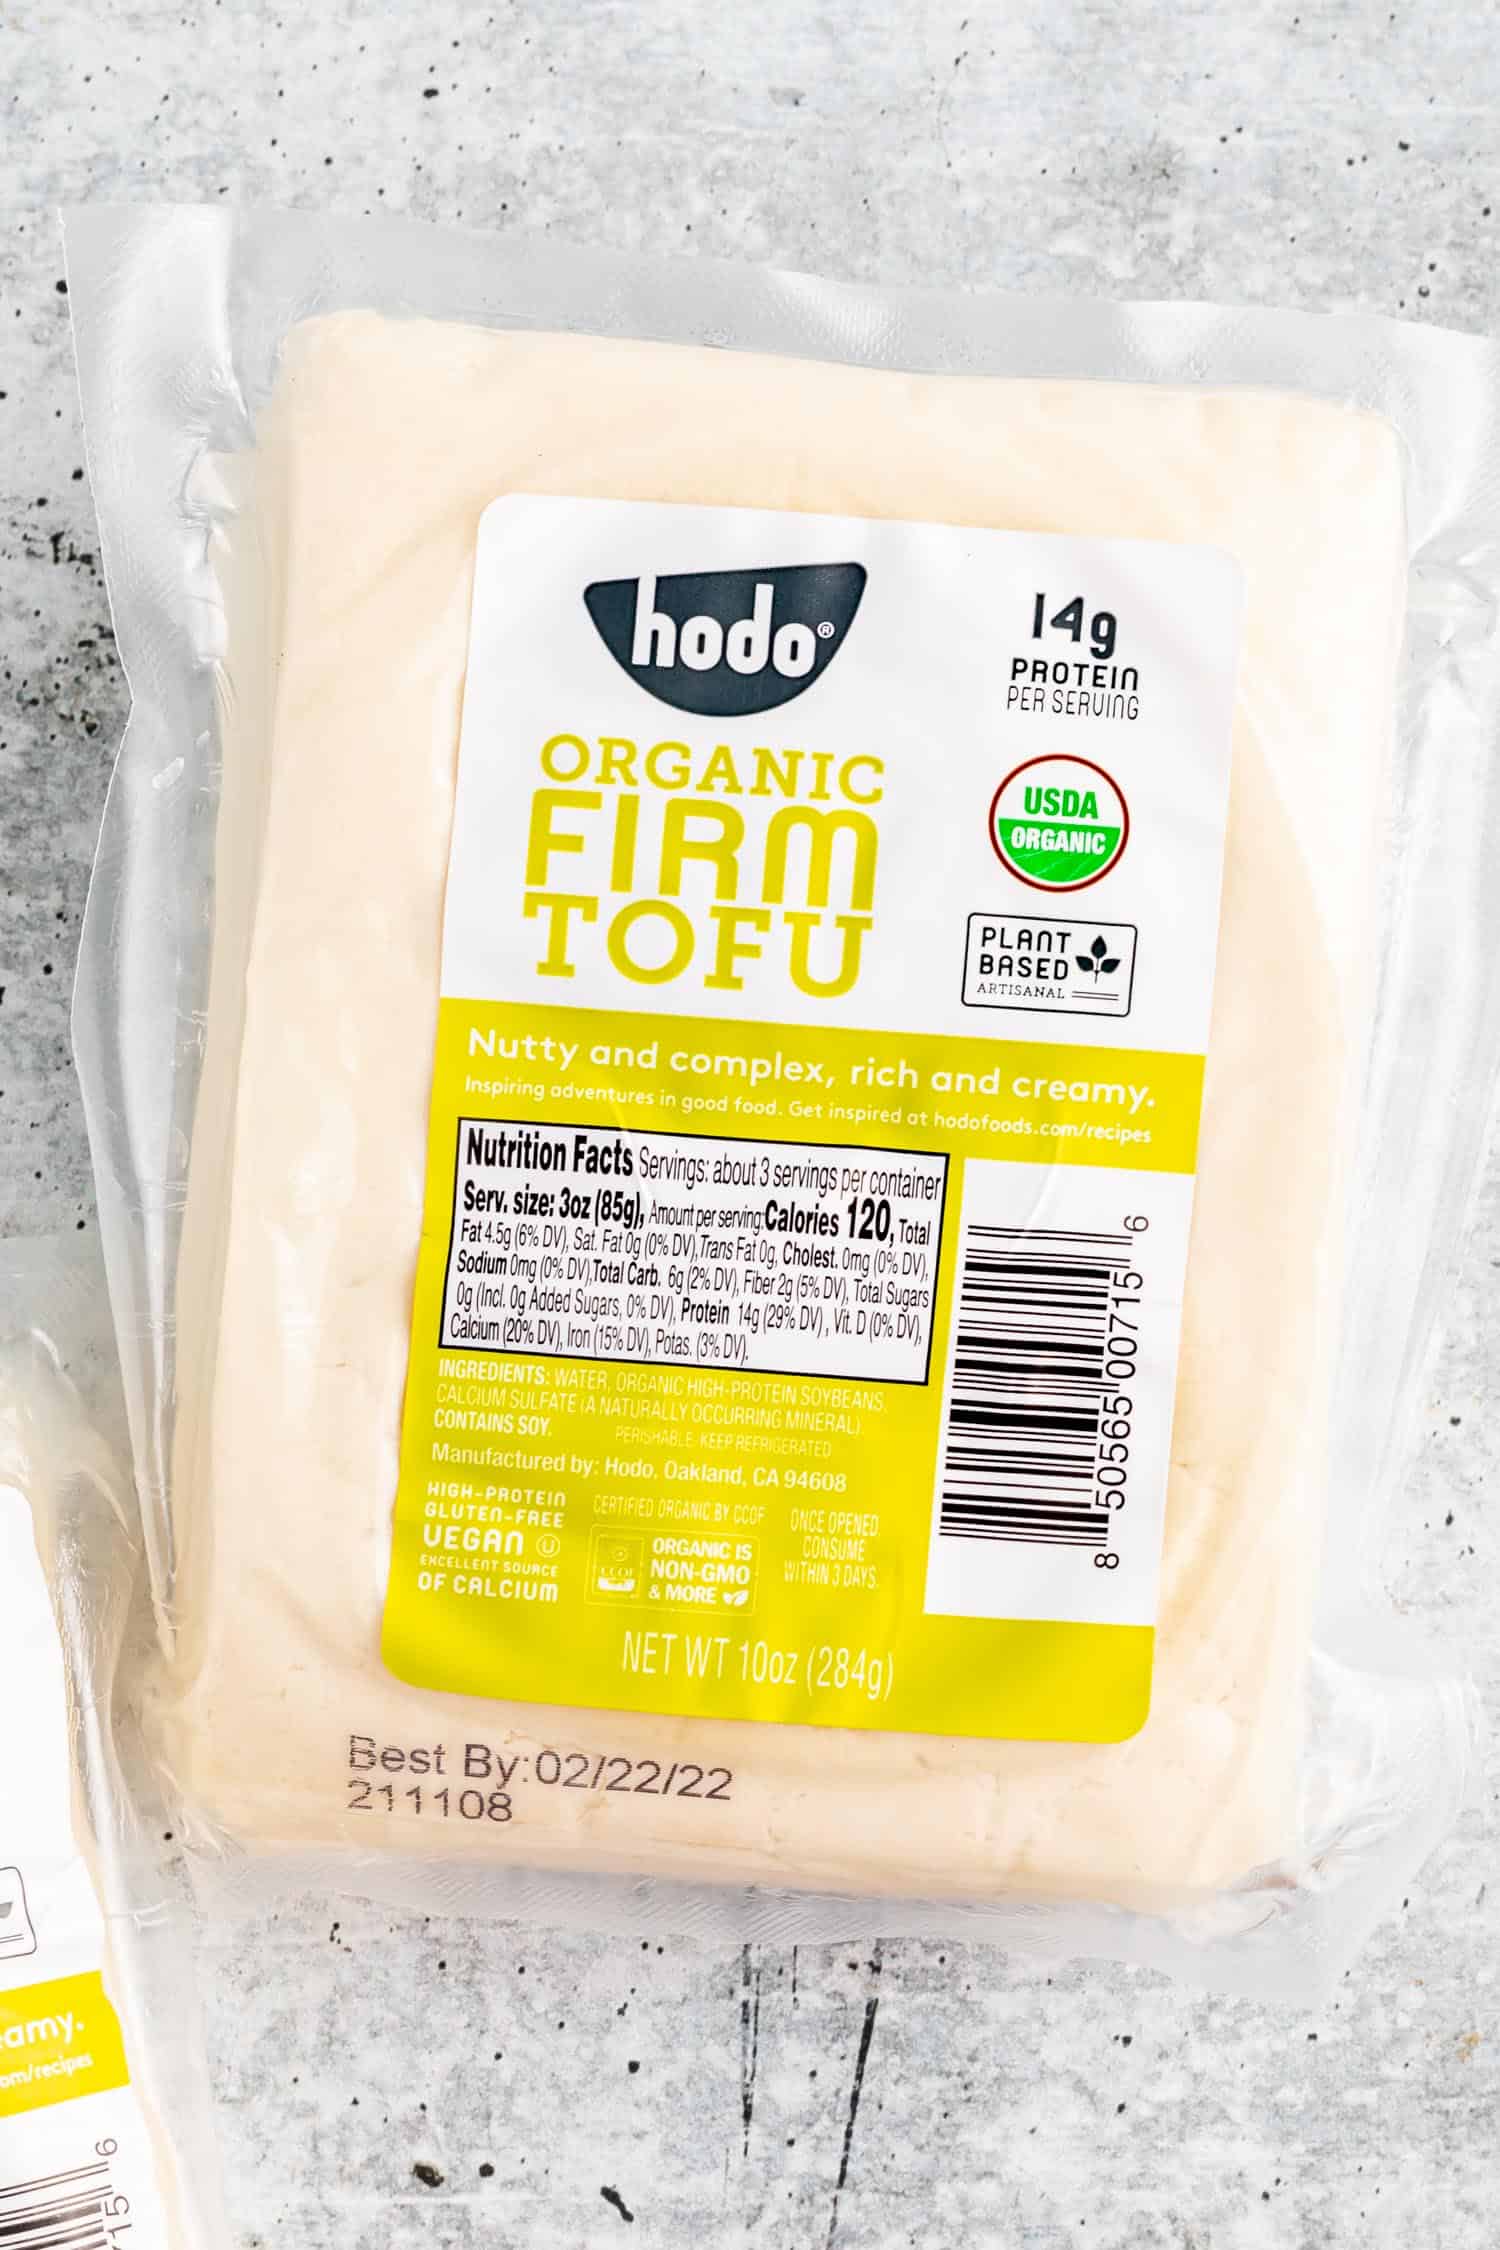 Hodo tofu packaging